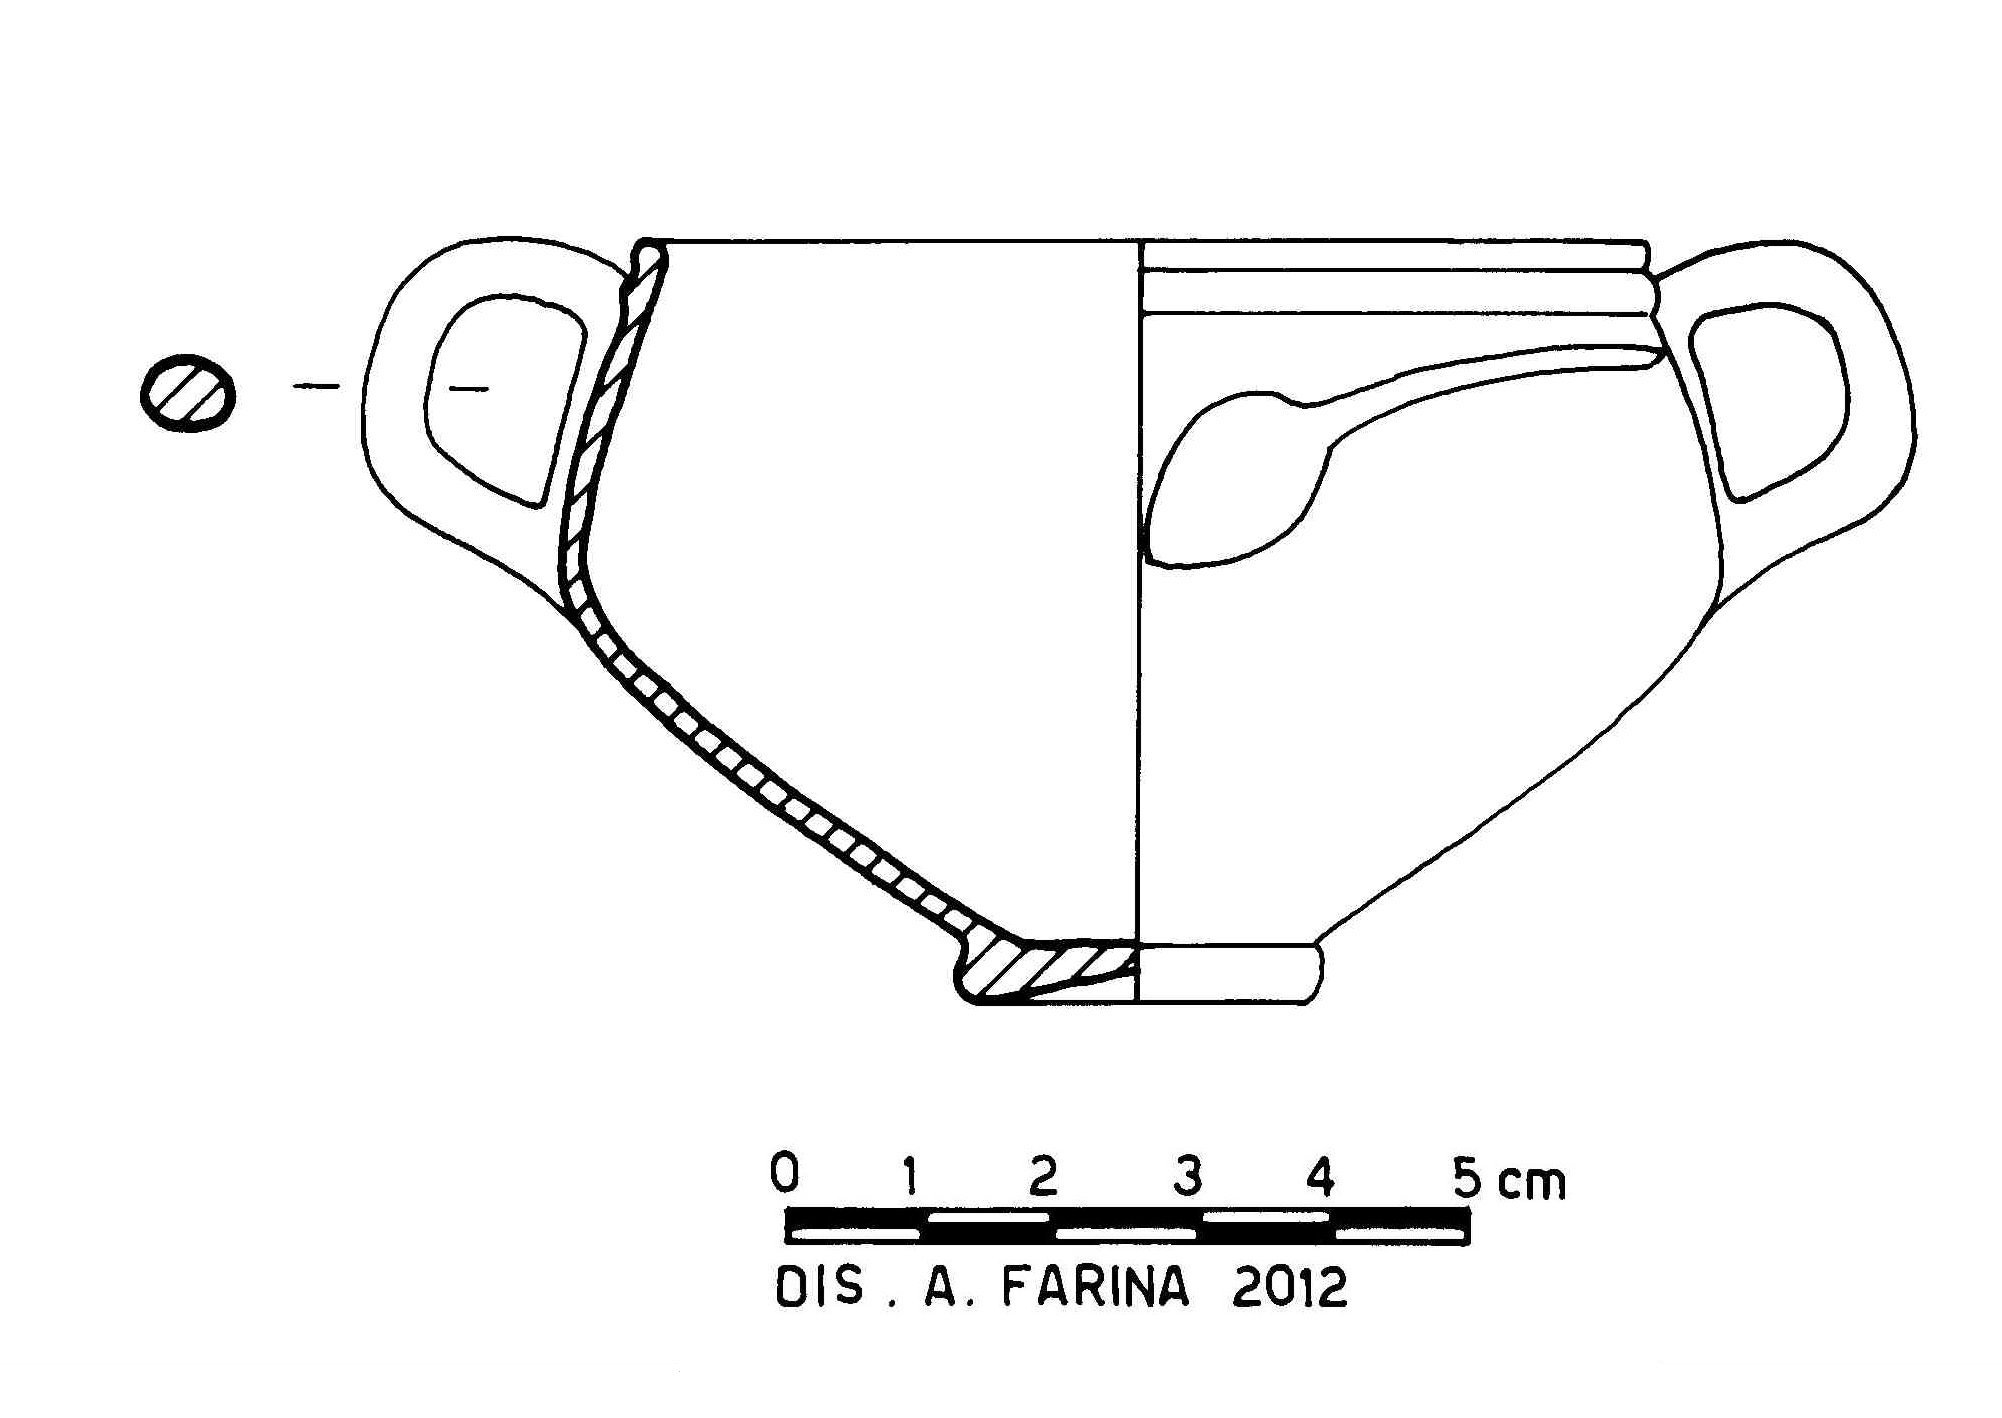 coppa carenata, Atlante XCVI, 11, tipo 2/394-395 Mayet XXXII Greene fig. 34.4 (Eta' romana imperiale)